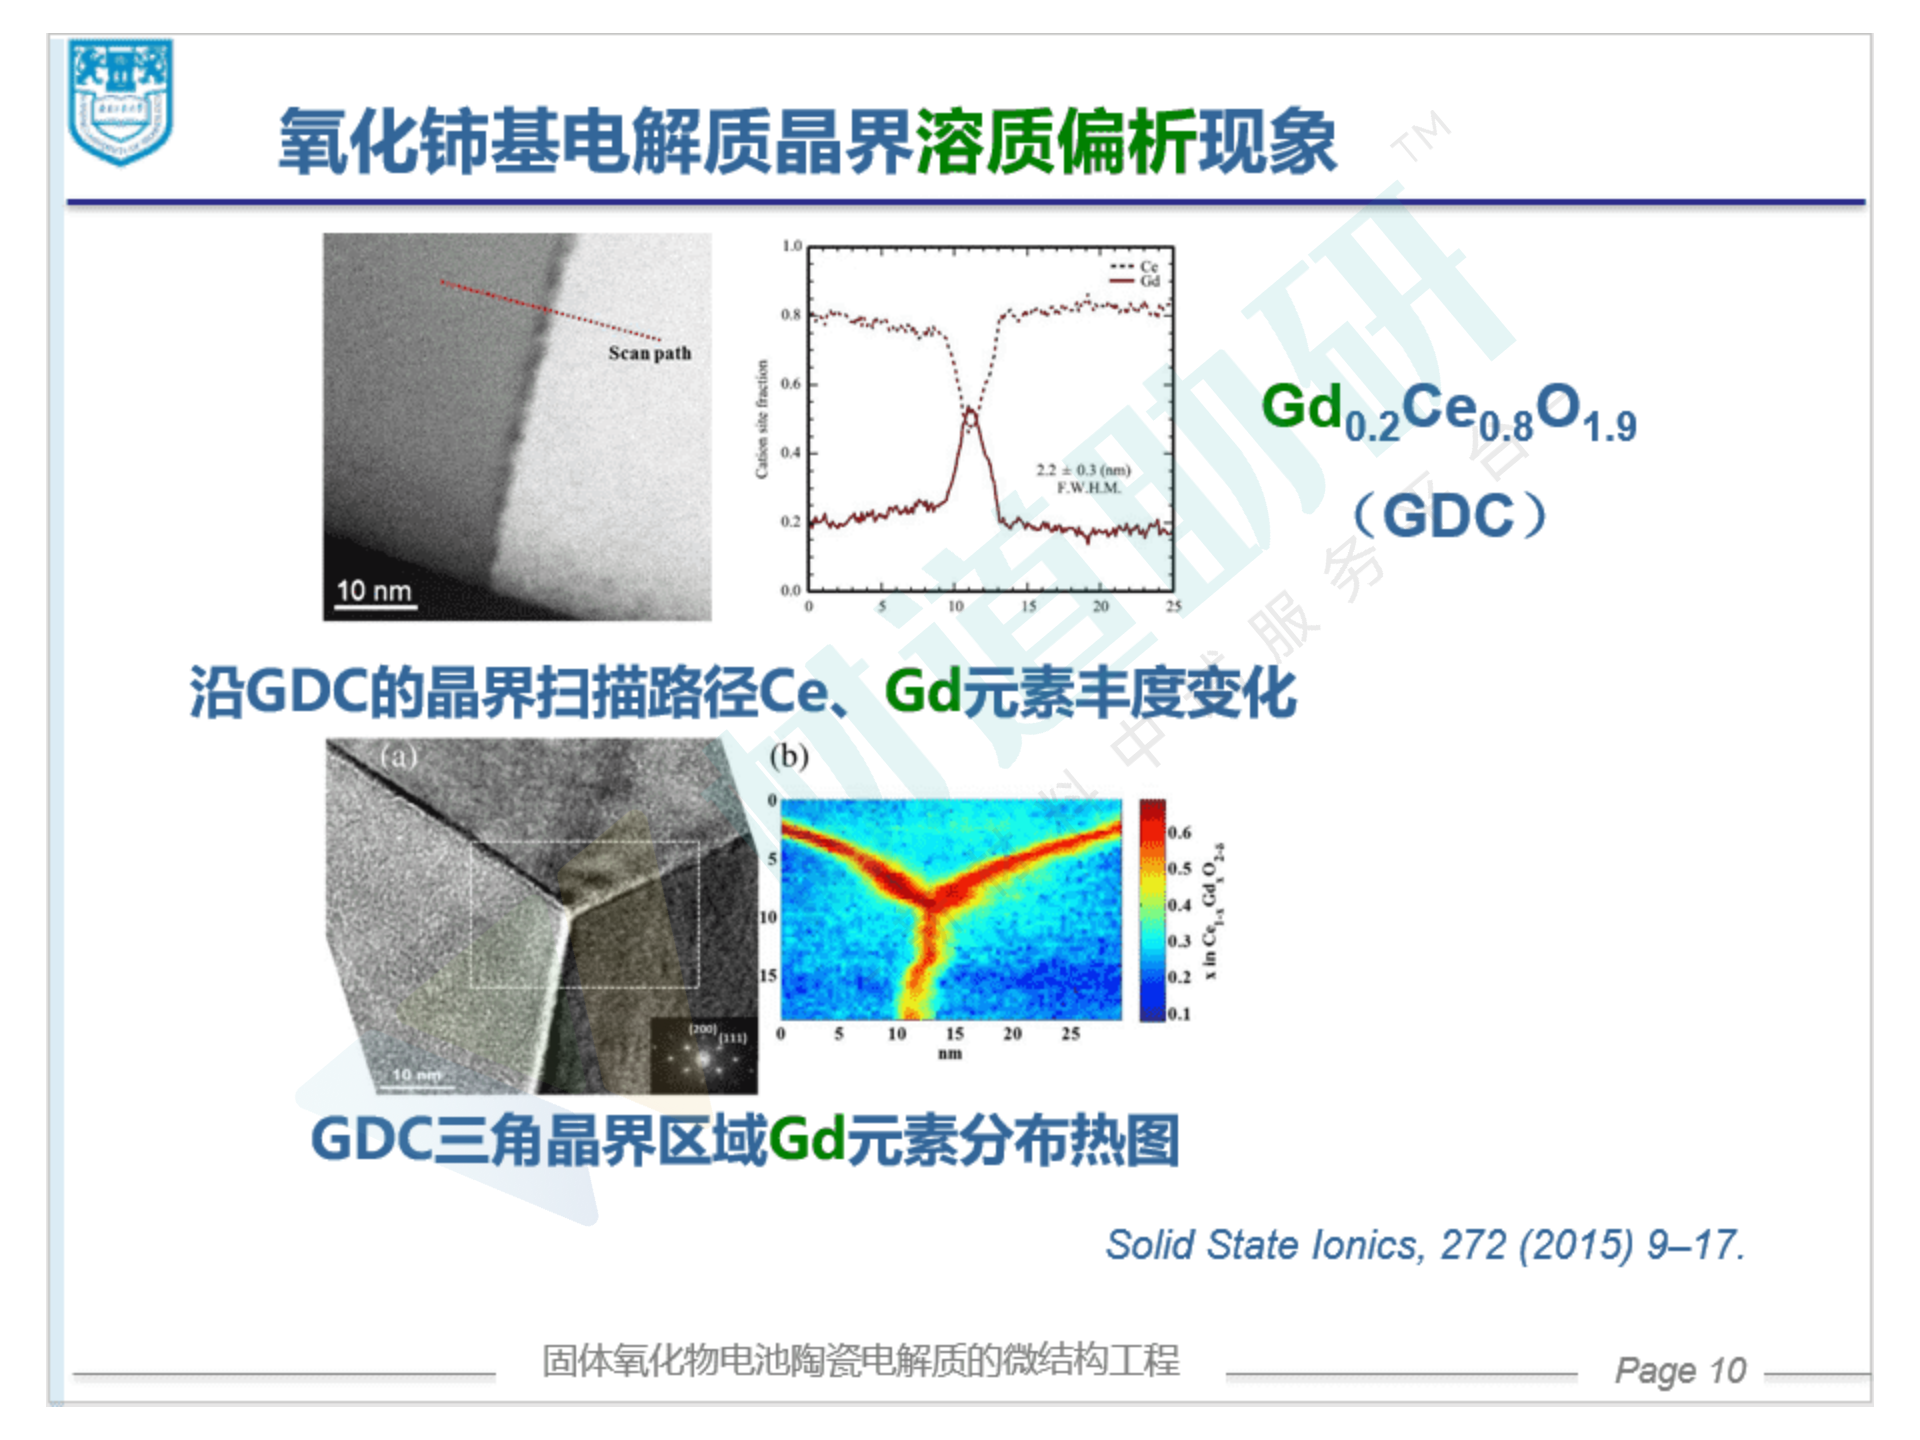 葛林-固体氧化物电池陶瓷电解质的微结构工程（分享版）_10.png